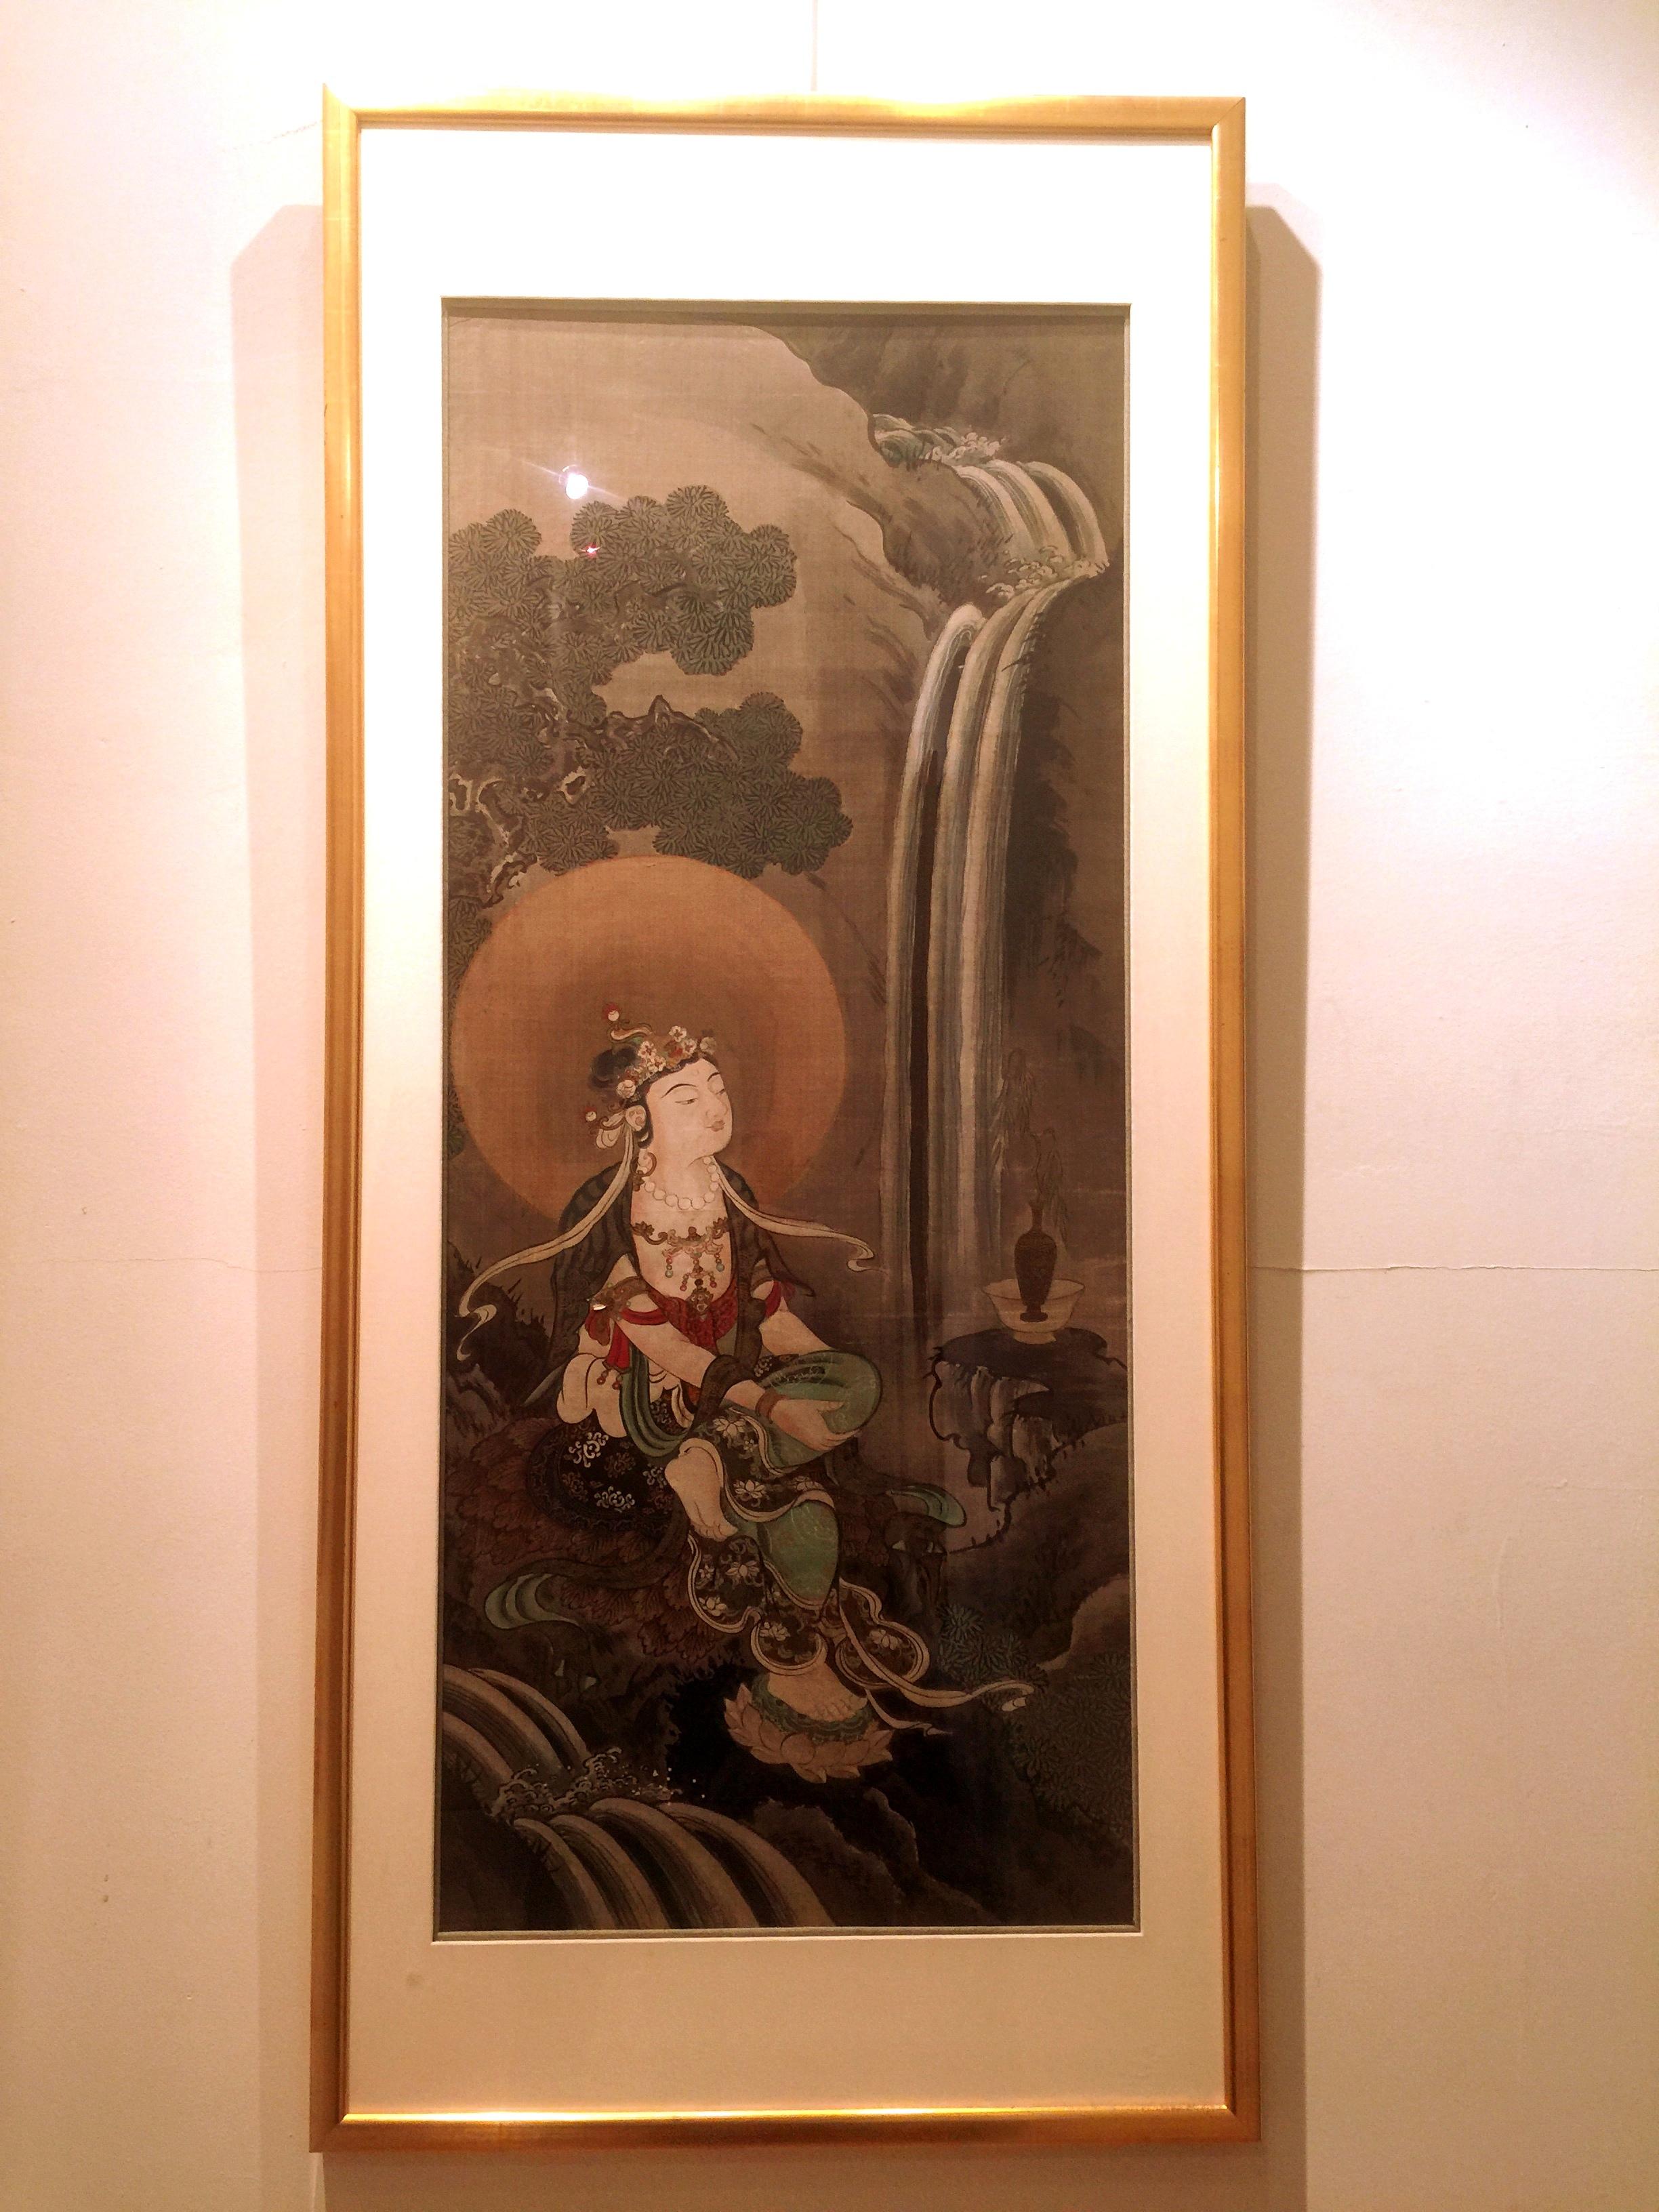 raffiniertes japanisches Pinselgemälde eines sitzenden Bodhisattva mit Bach, Wasserfall und Kiefer, Tusche und Farbe auf Seide, 19. Jahrhundert, konservatorisch gerahmt.
Gesamtgröße:  25 1/2